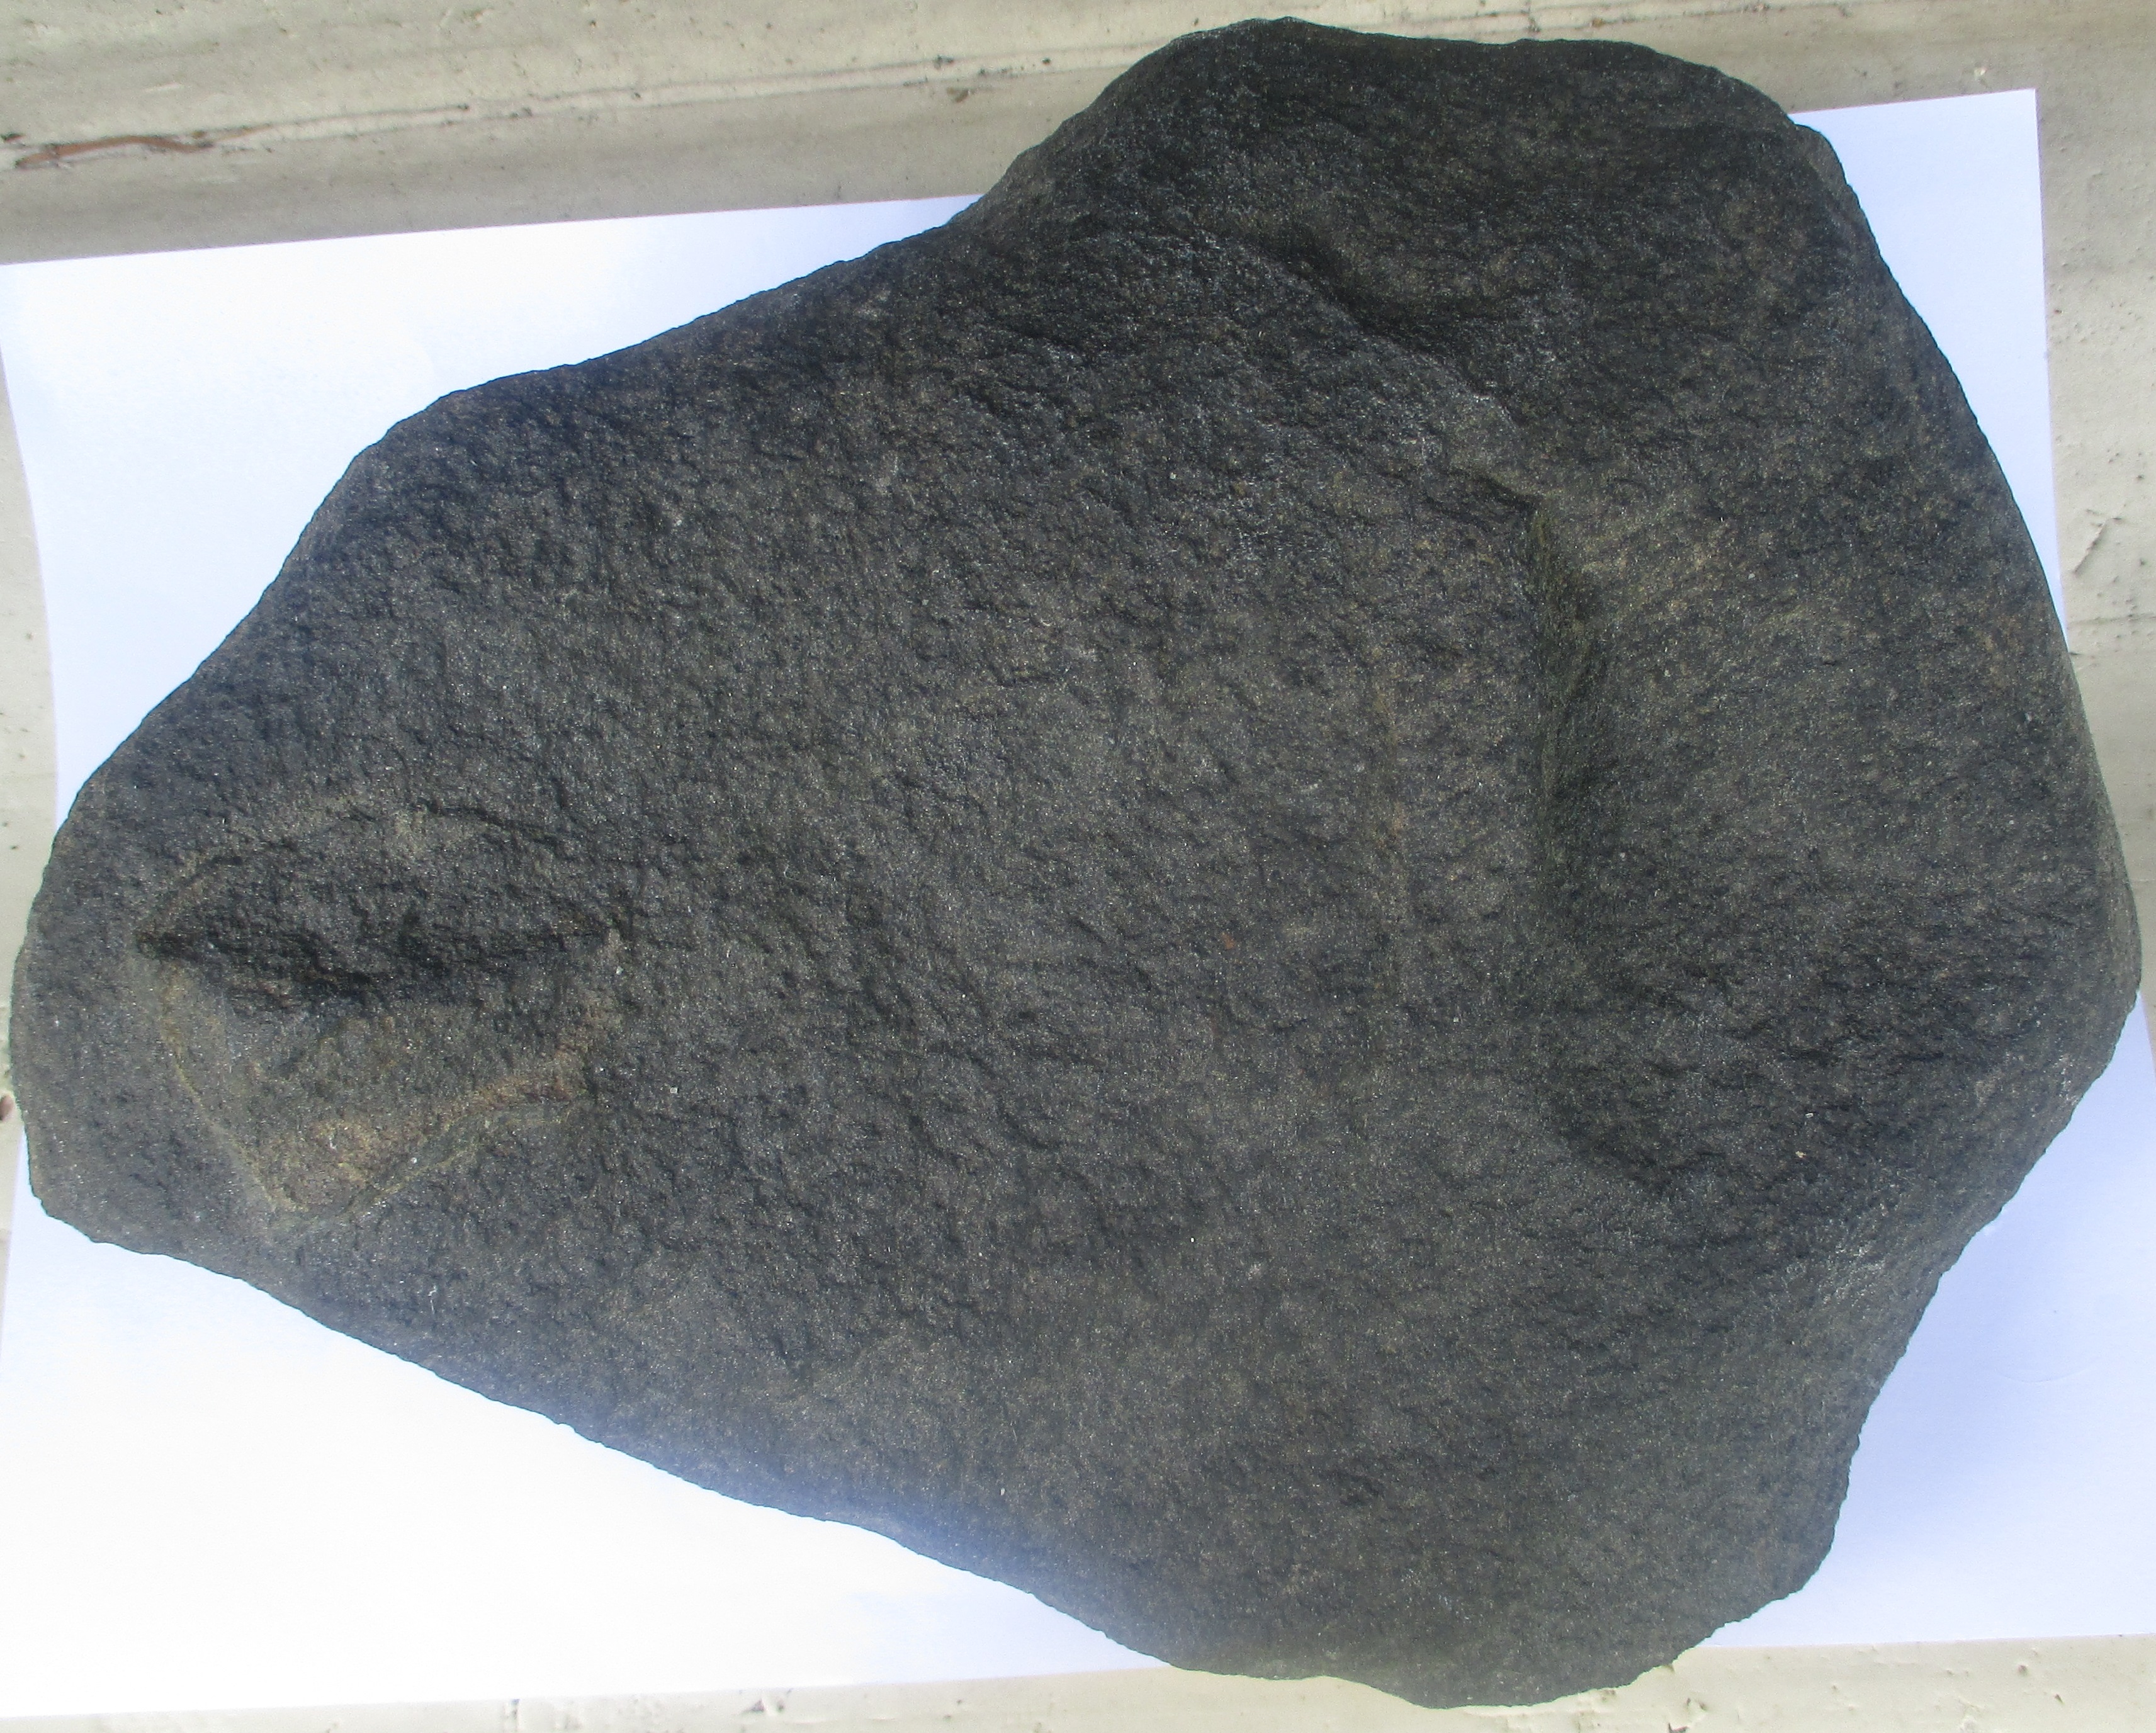 Die inzwischen nachgedunkelte Schmelzkruste des Meteoriten ist sicher der fehlenden Witterung aber auch dem Wasser und dem Kohlenstoff im Met  geschuldet